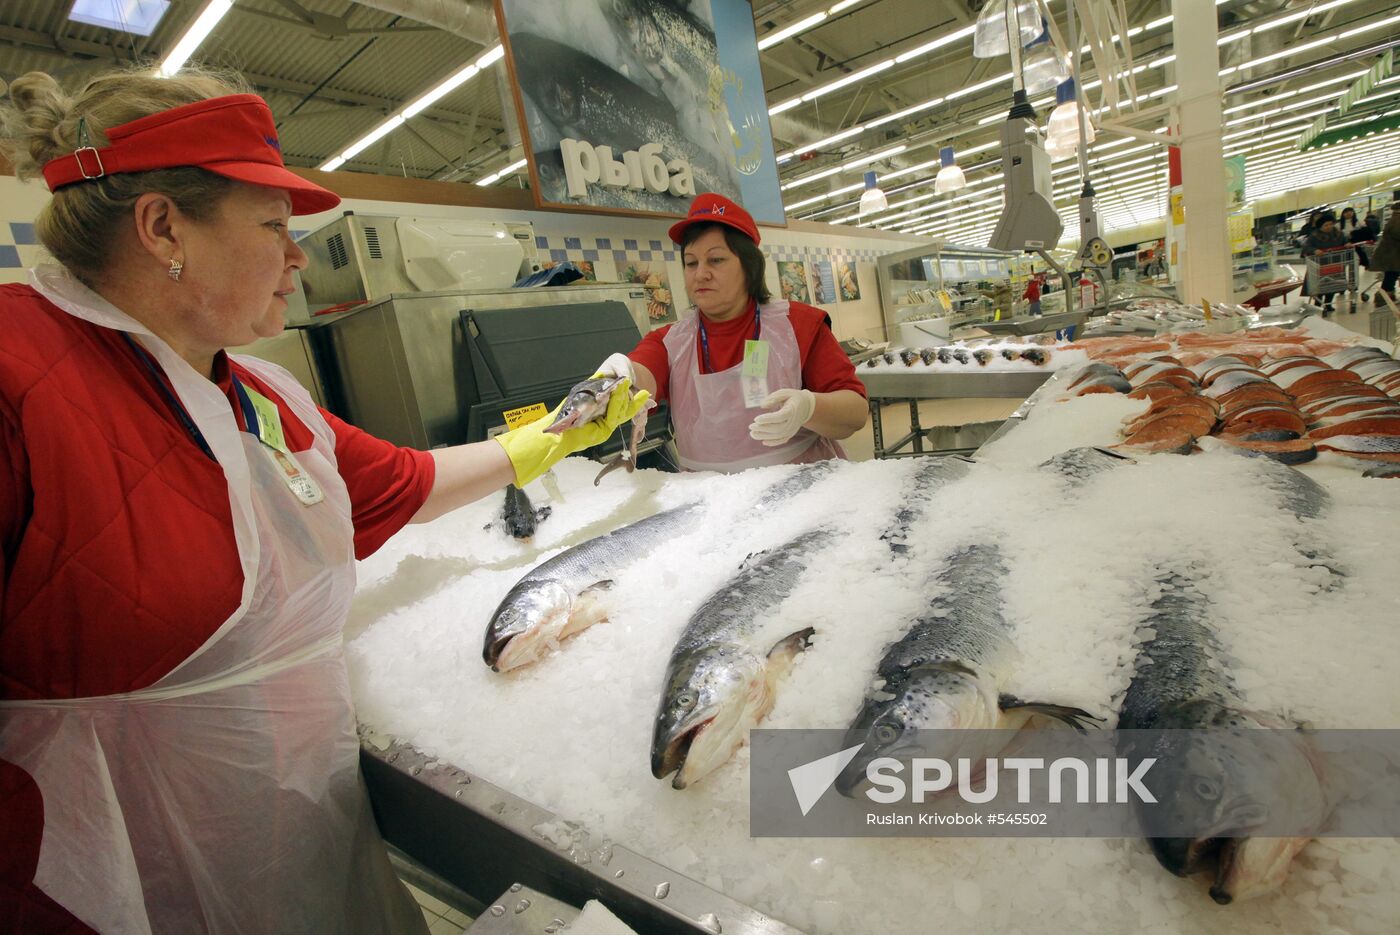 Mosmart hypermarket in Moscow